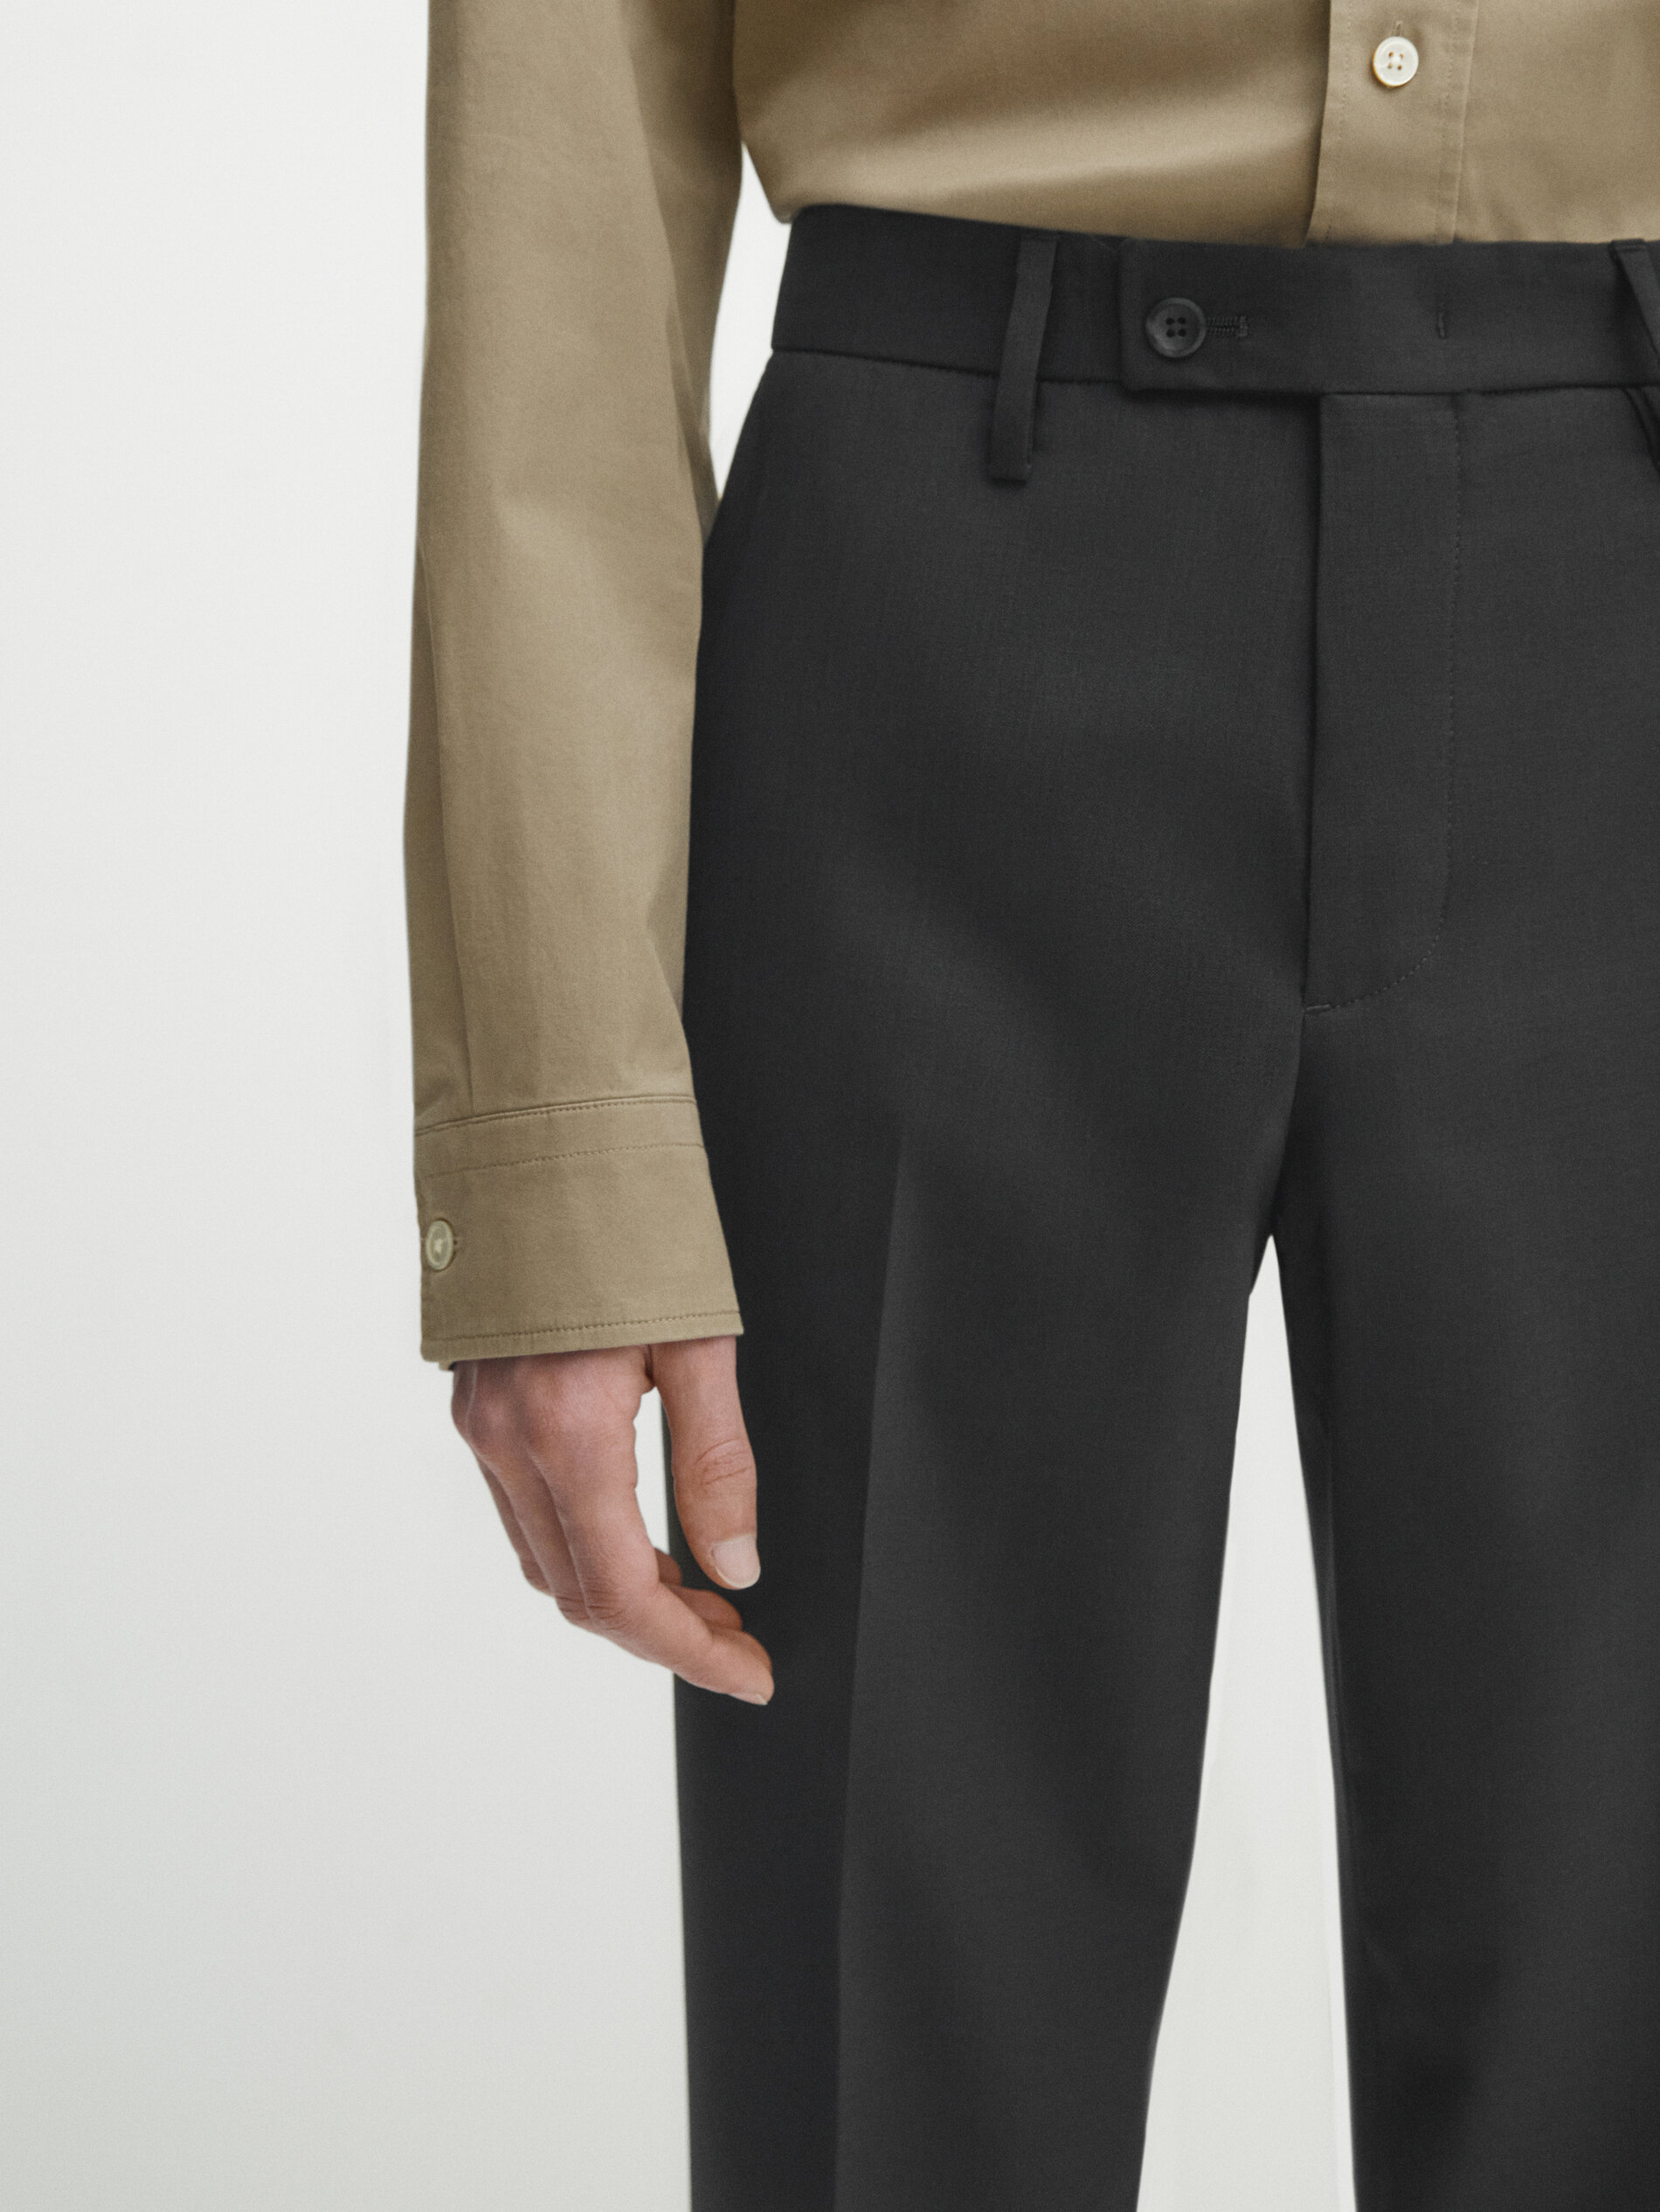 Pantalón traje gris lana stretch